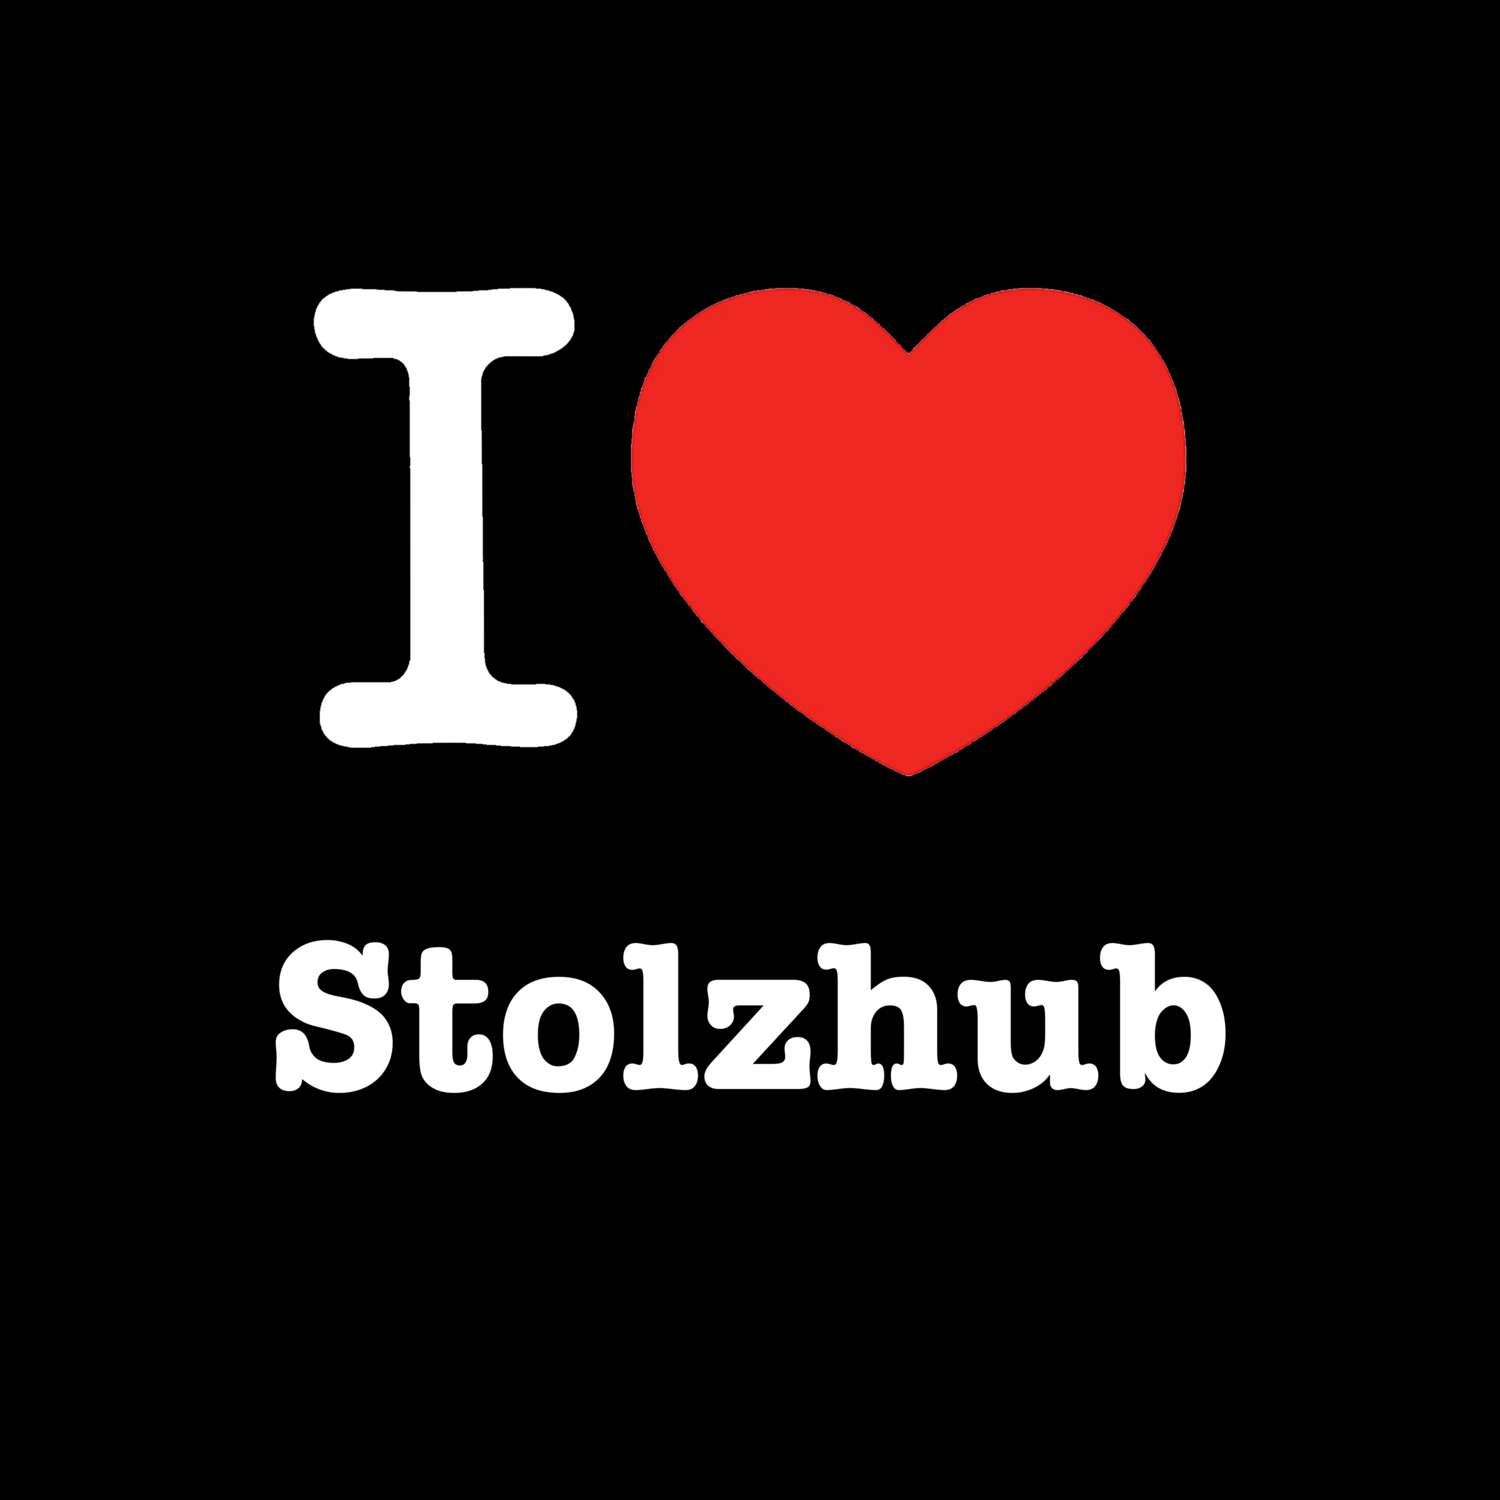 Stolzhub T-Shirt »I love«